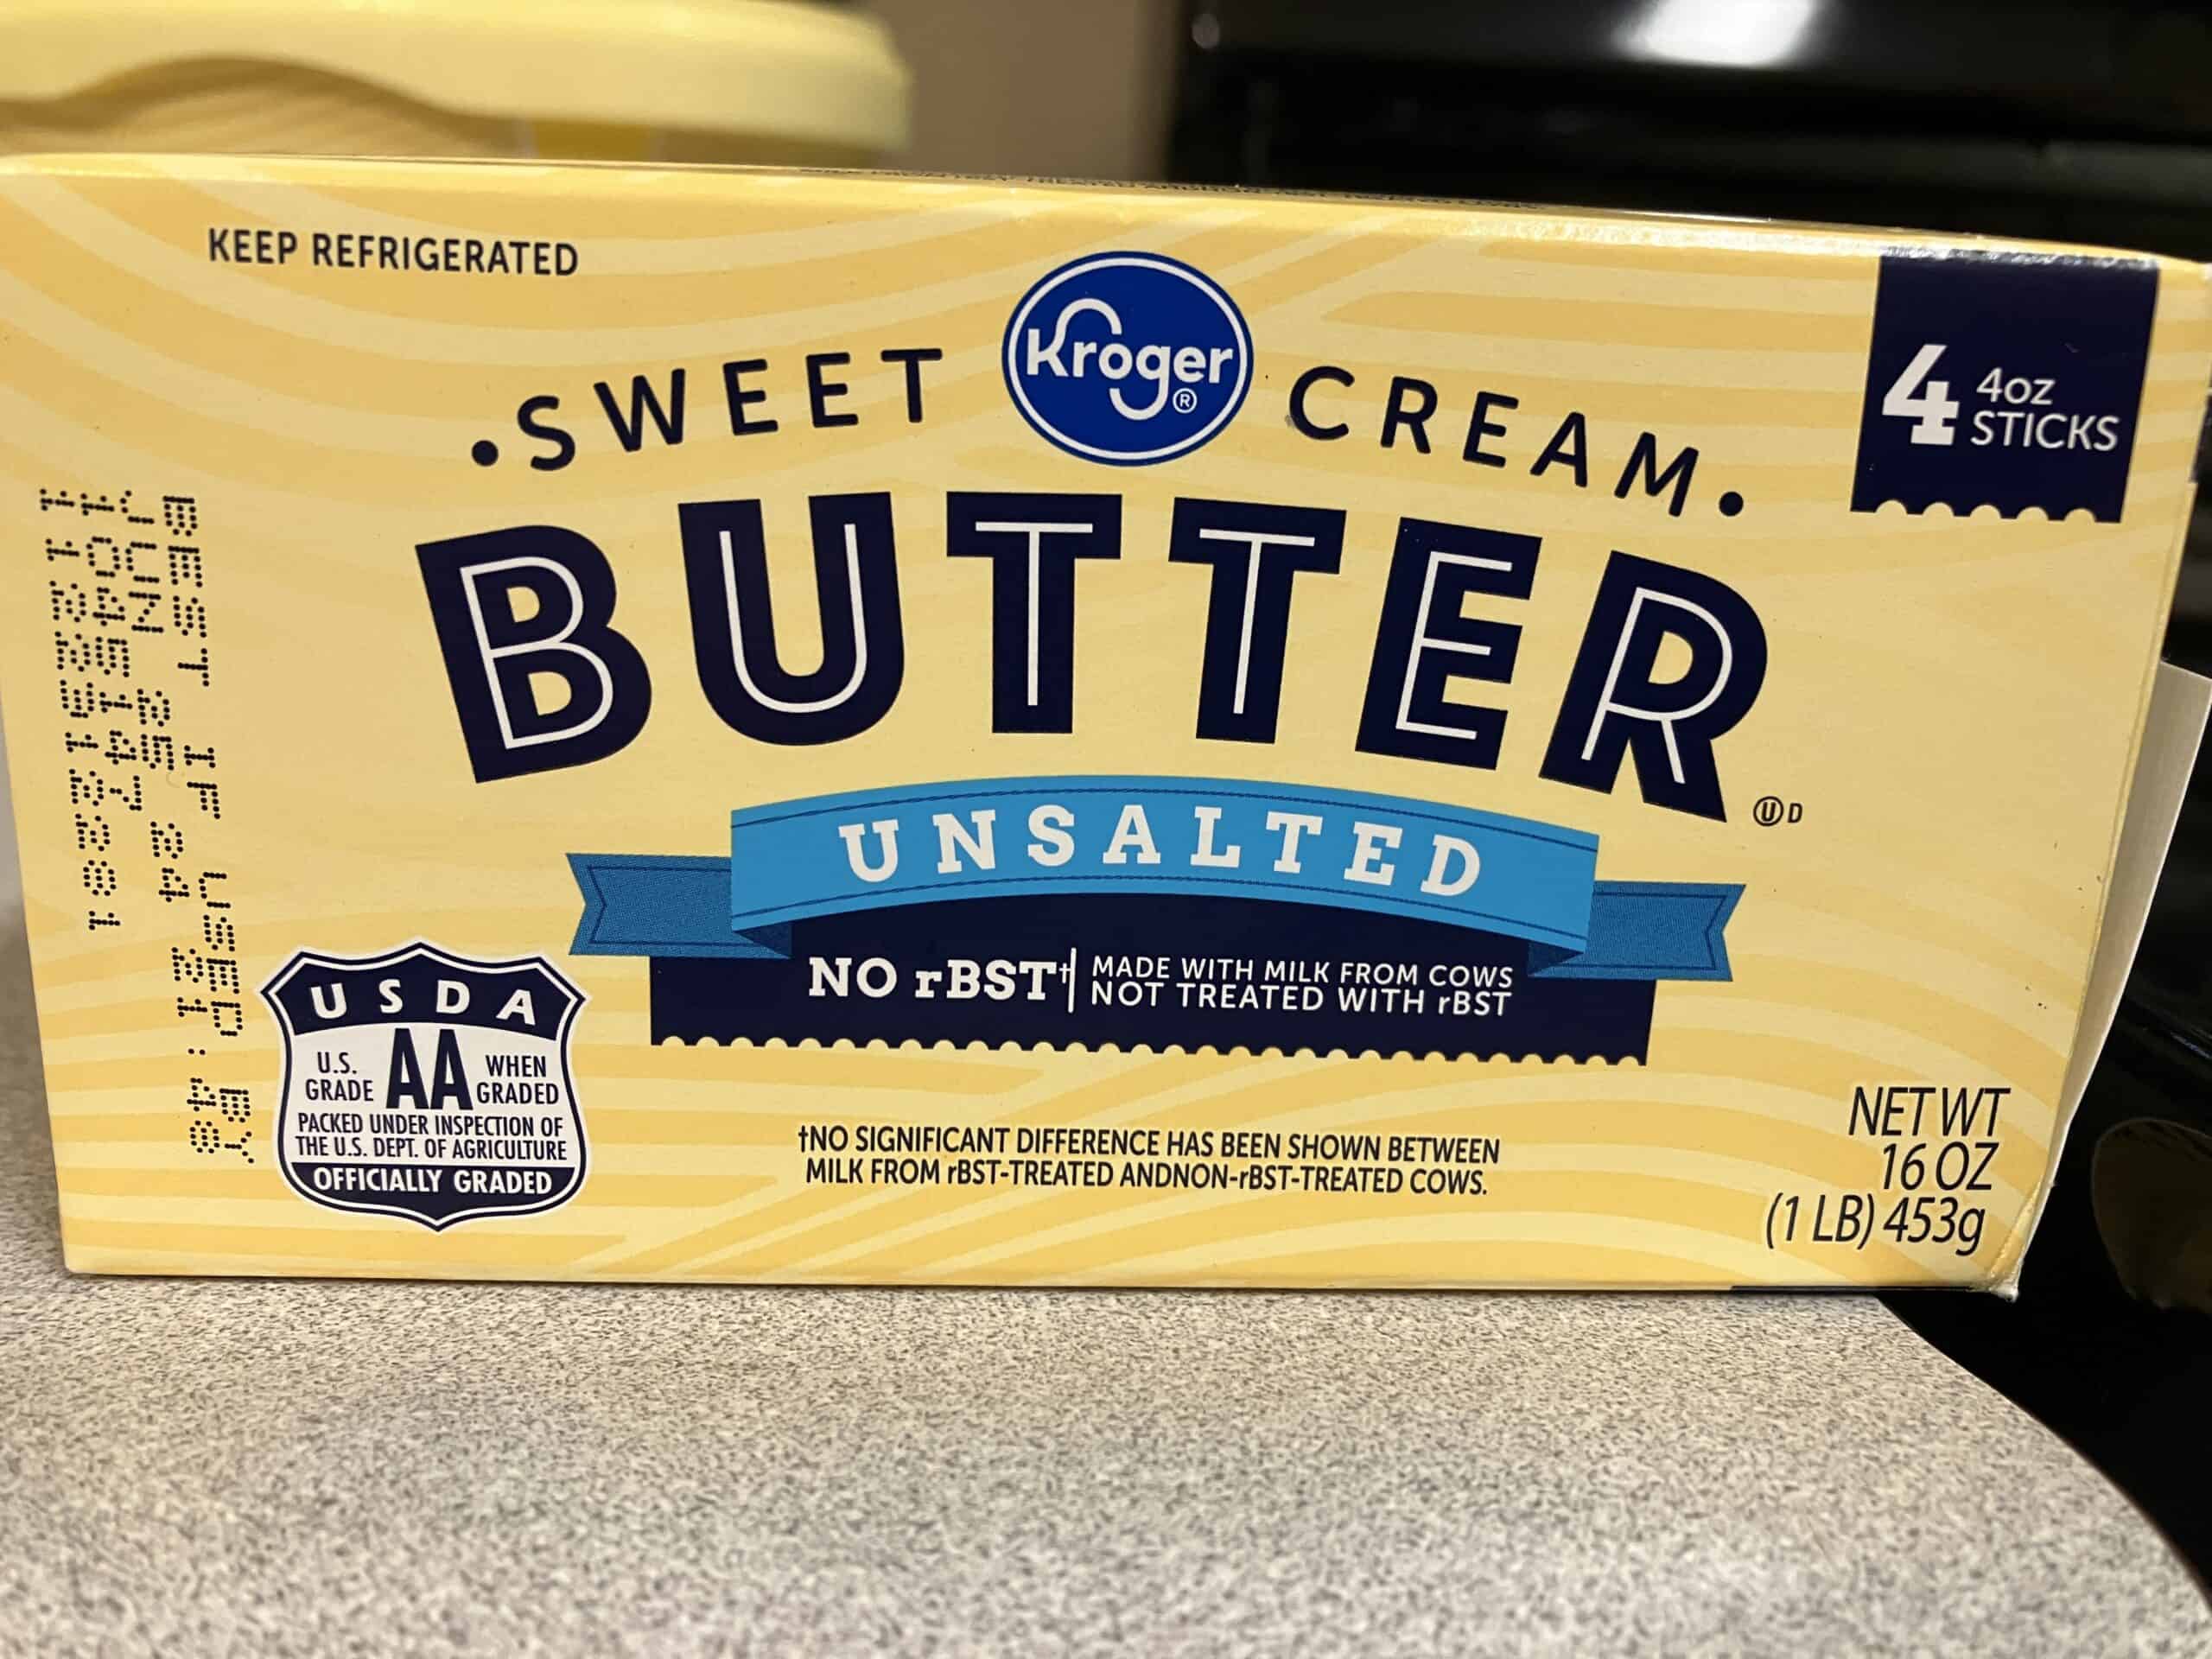 Kroger unsalted butter